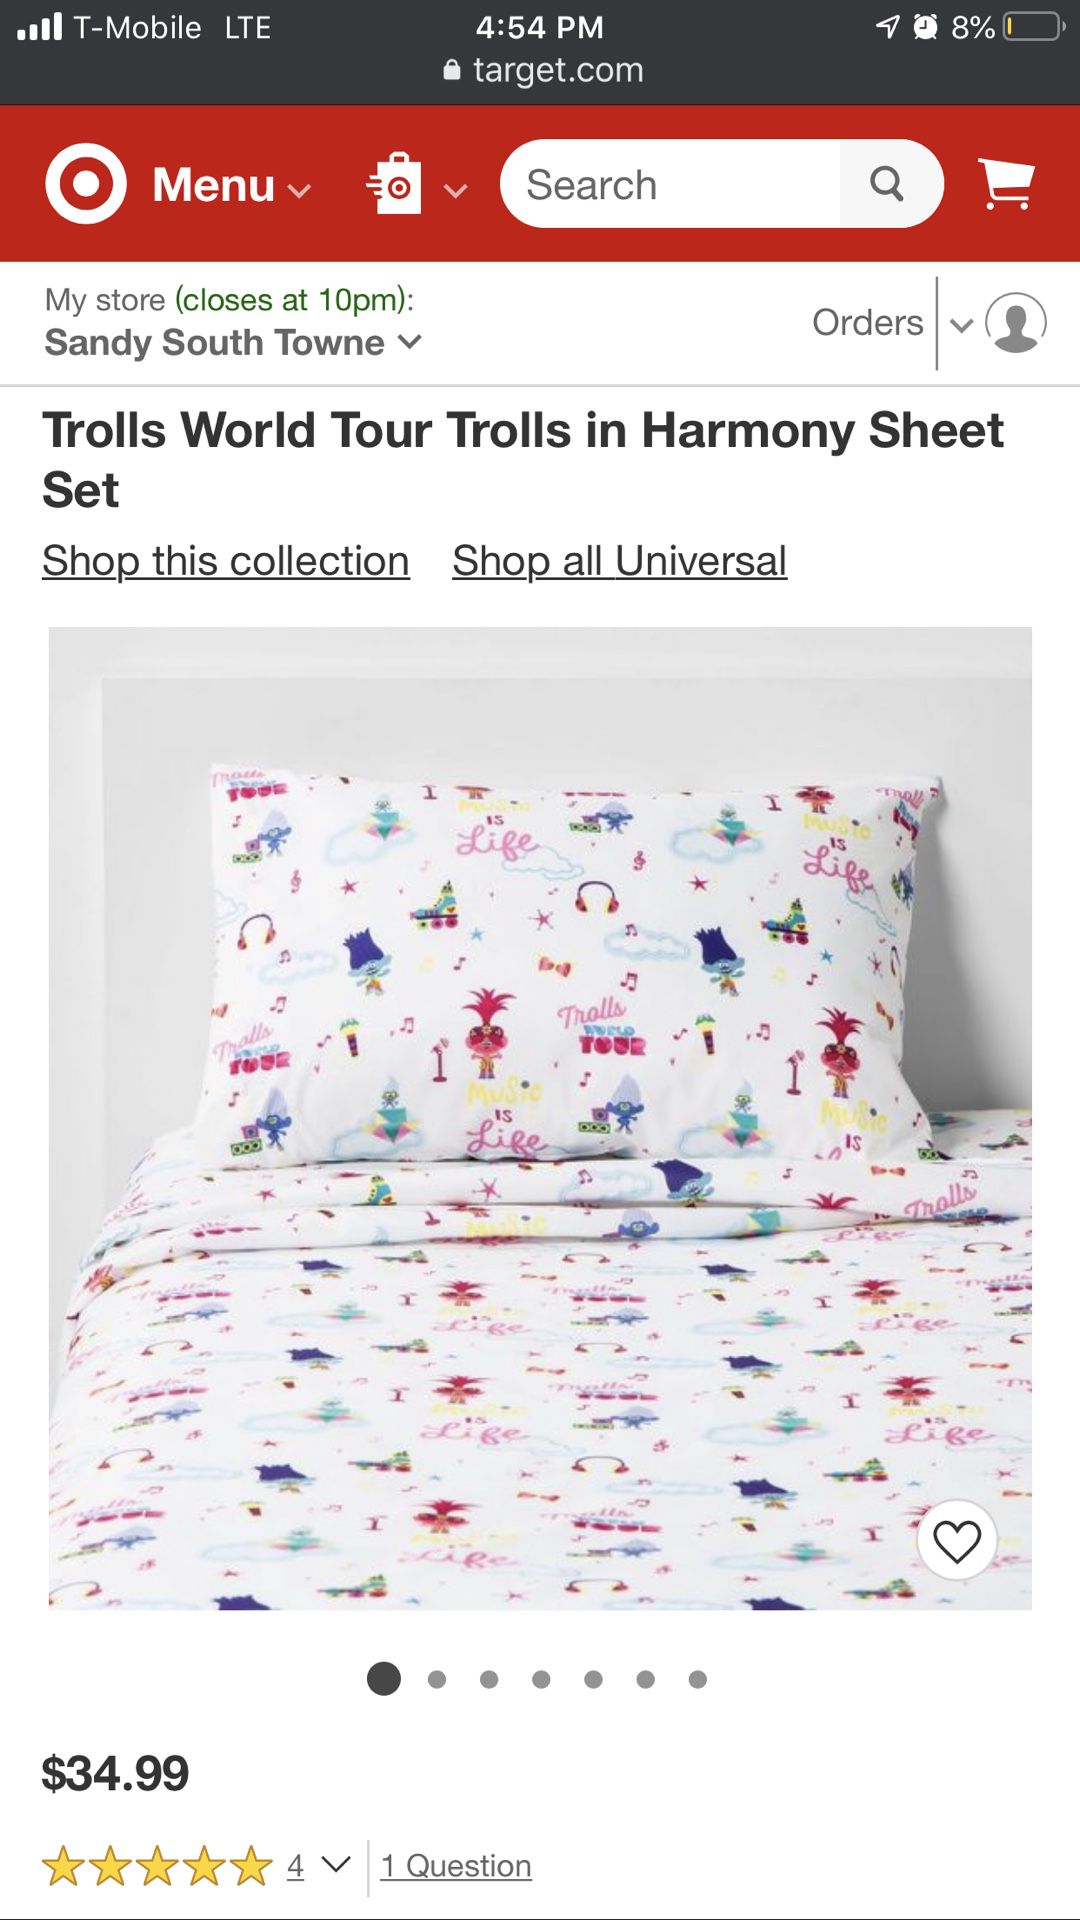 Trolls World Tour Trolls in Harmony Sheet Set